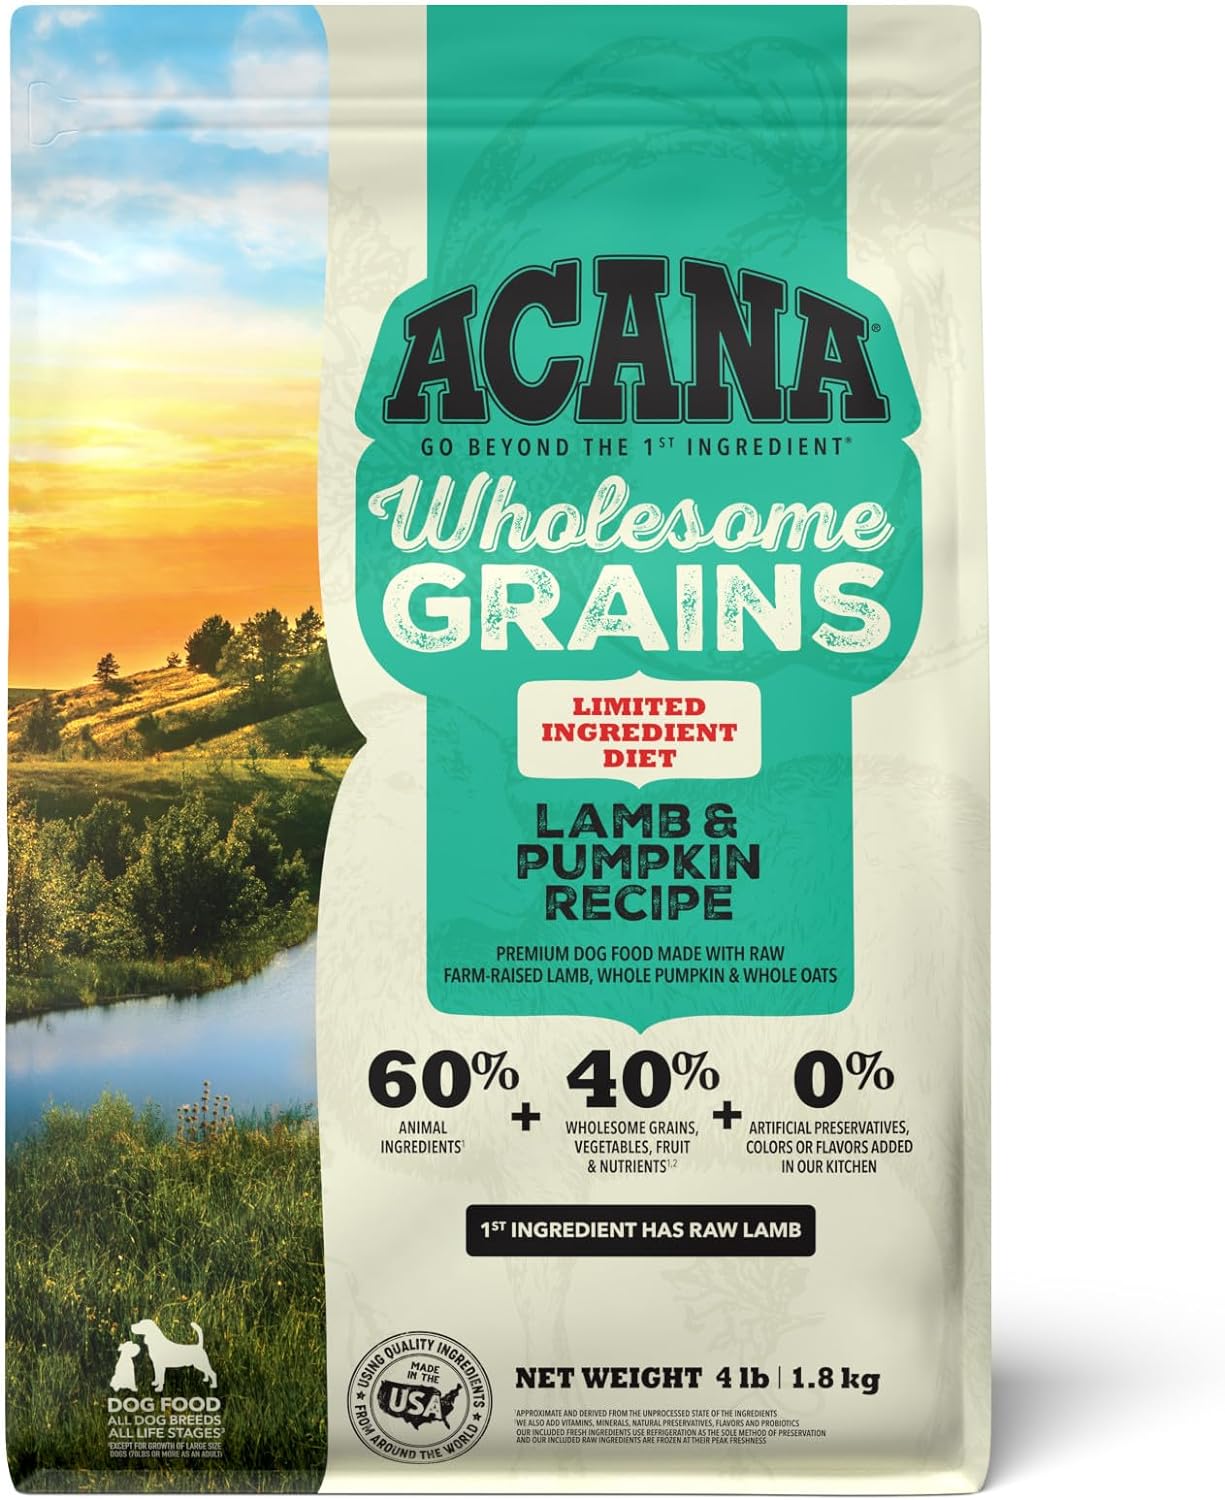 ACANA Wholesome Grains Dry Dog Food, Lamb & Pumpkin Recipe, 4lb